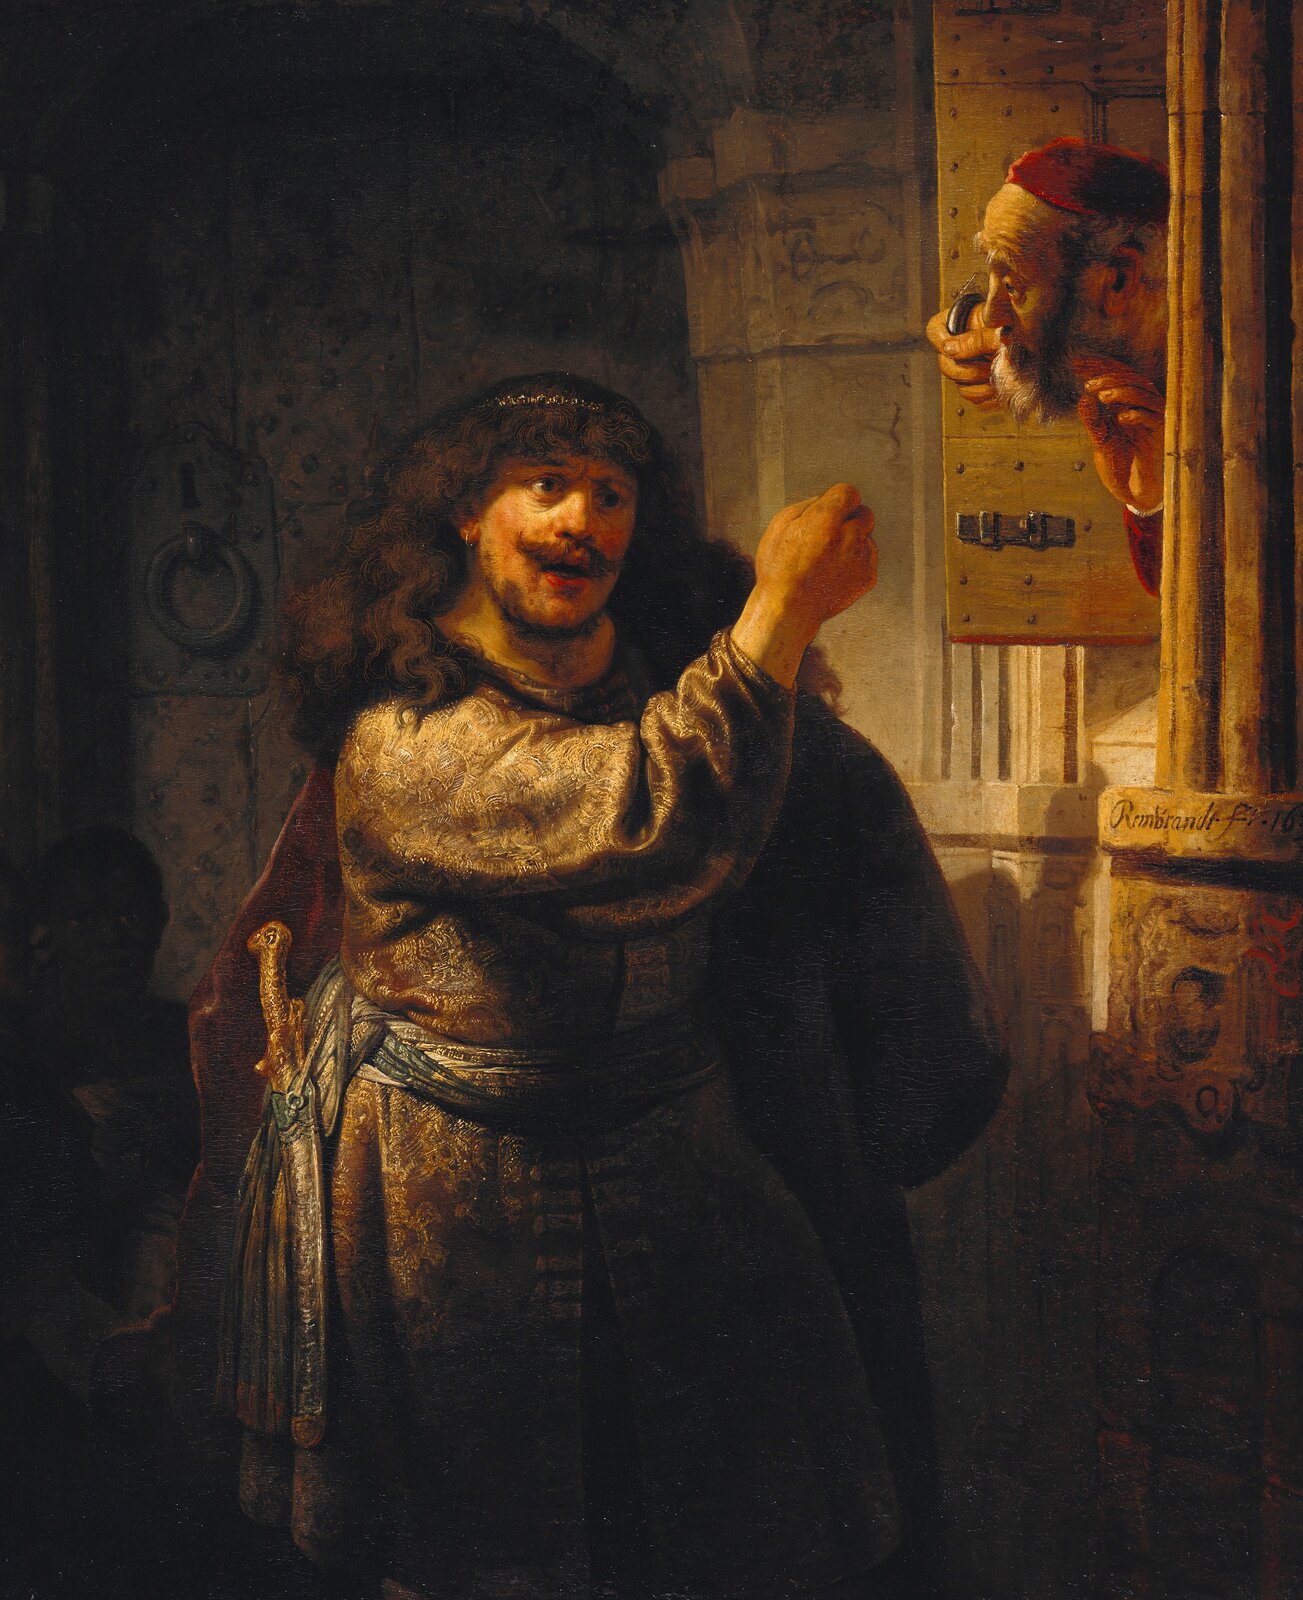 Obraz przedstawia dwóch mężczyzn. W centralnej części znajduje się długowłosy, młody mężczyzna w przepasanej sukni i z mieczem u boku. Mężczyzna wygraża pięścią starszemu mężczyźnie, wyglądającemu nań z okna.